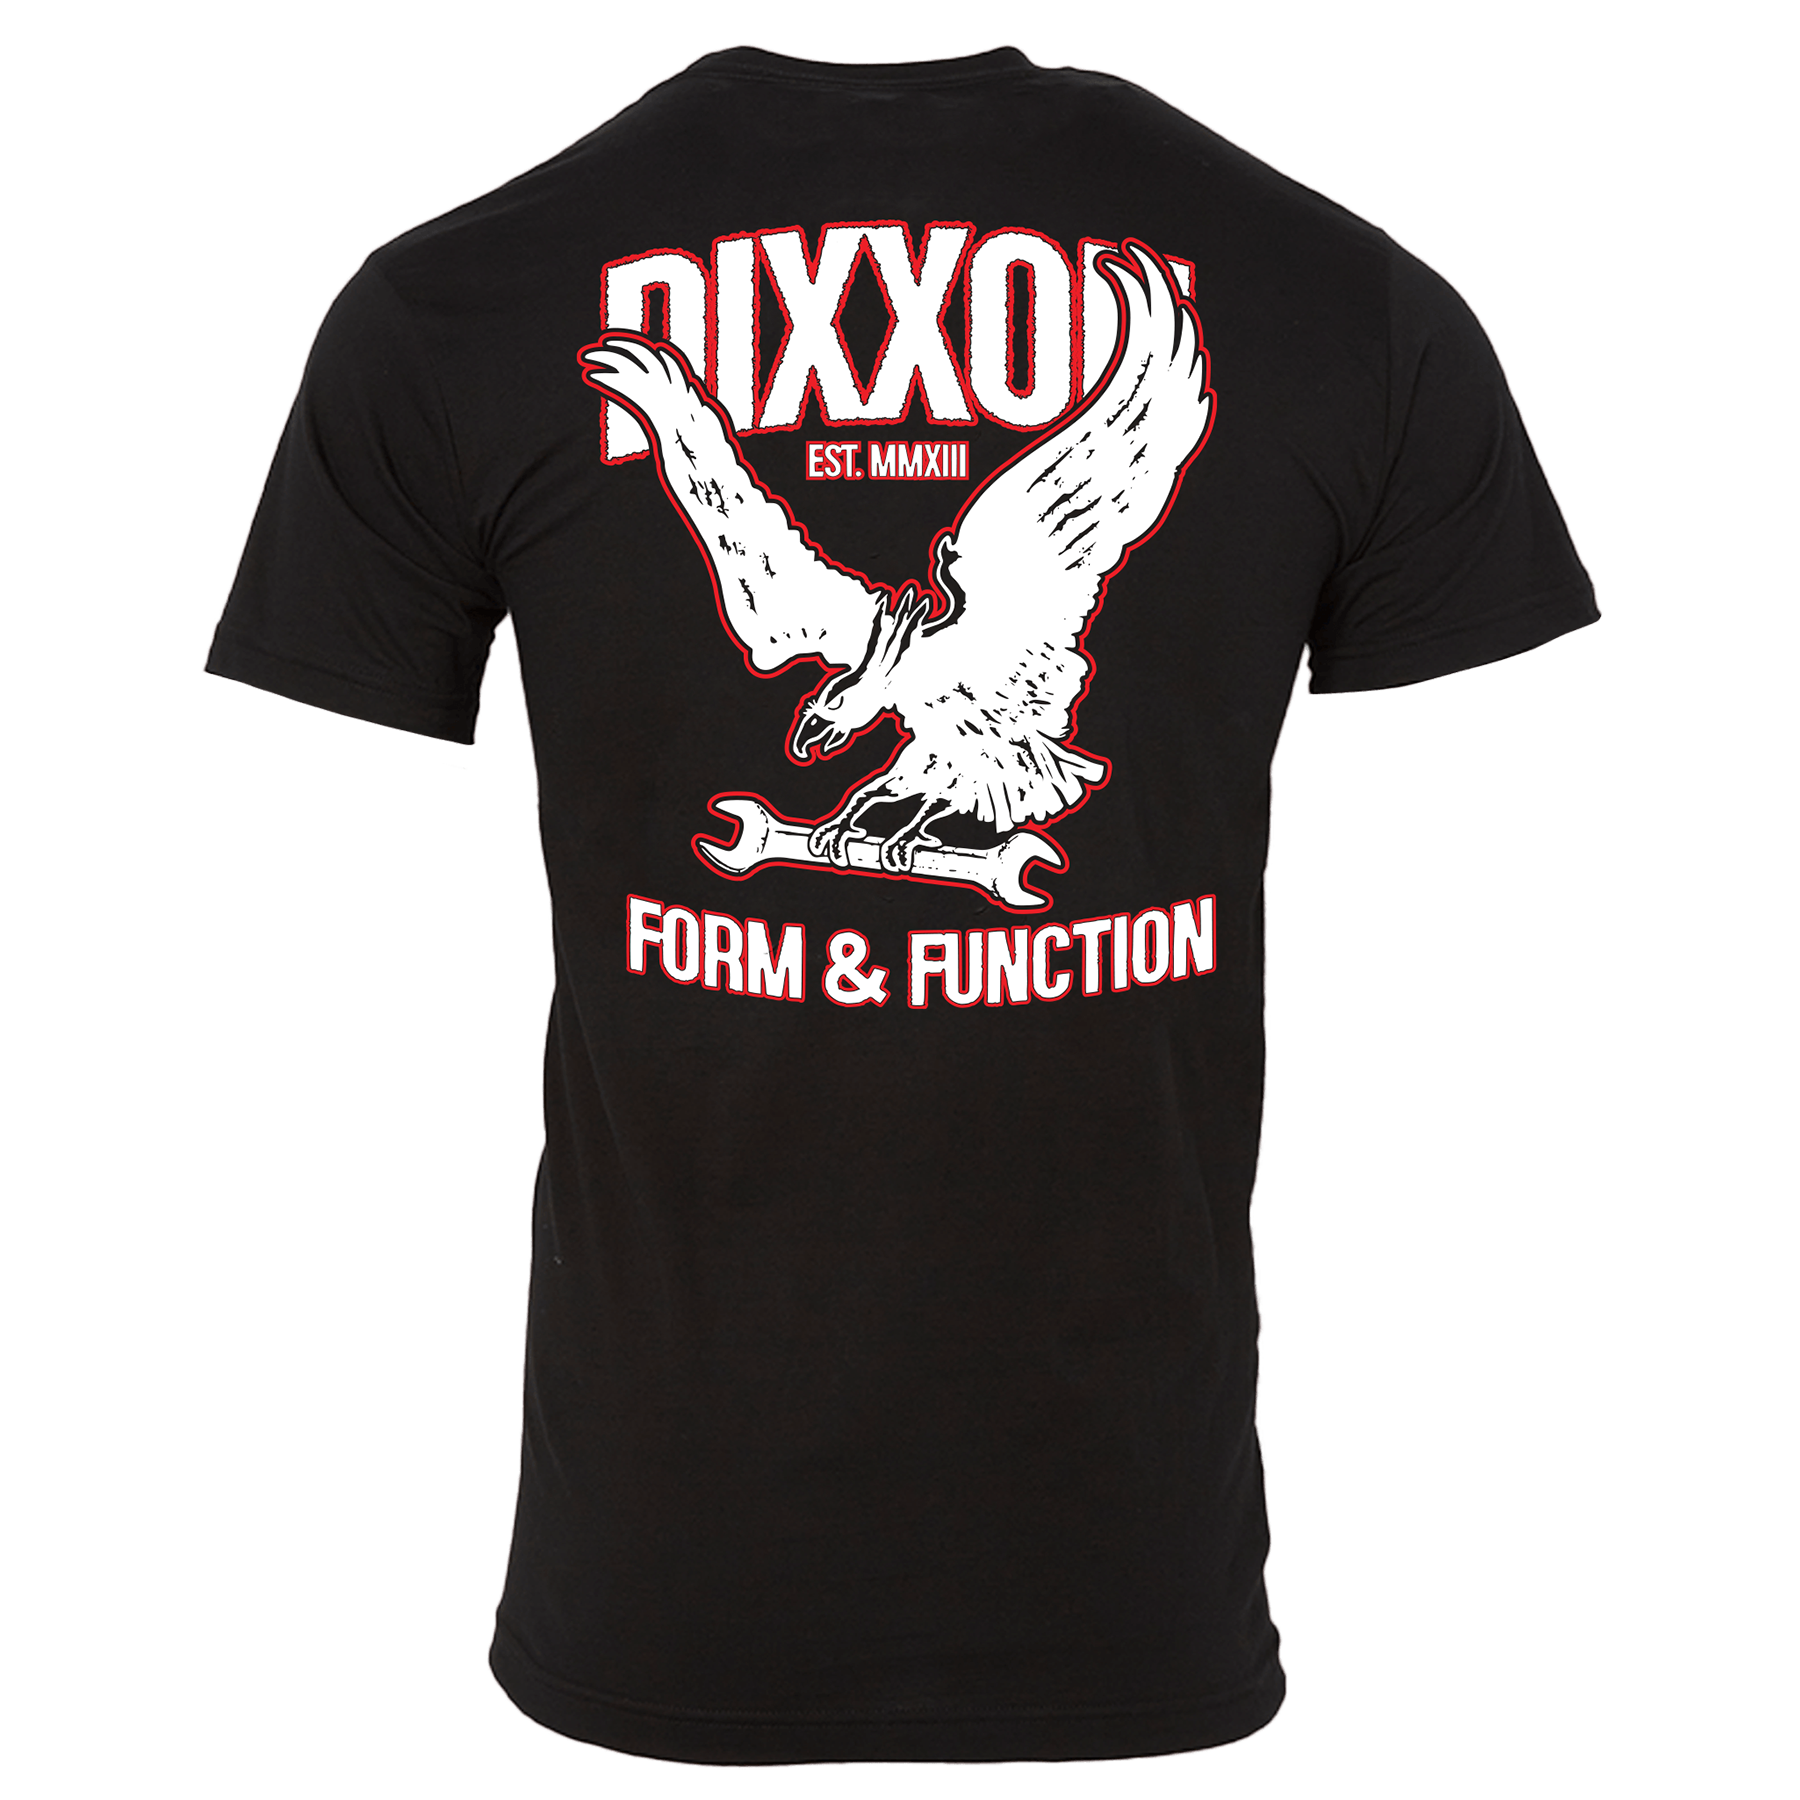 Form & Function T-Shirt - Black - Dixxon Flannel Co.